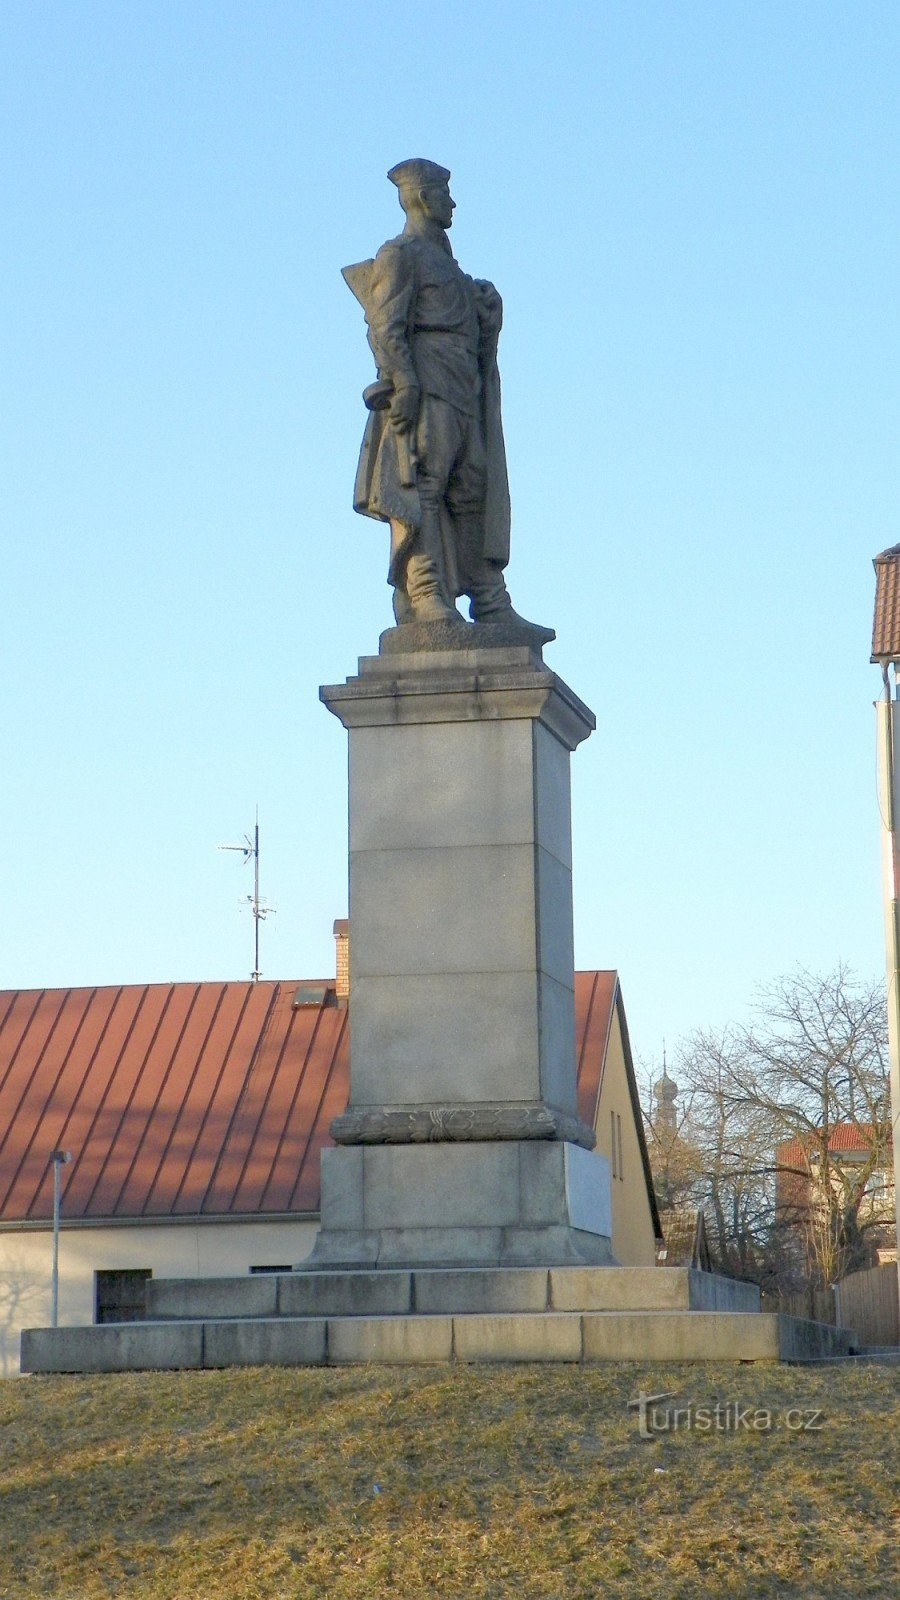 Статуя красноармейца - памятник освобождения